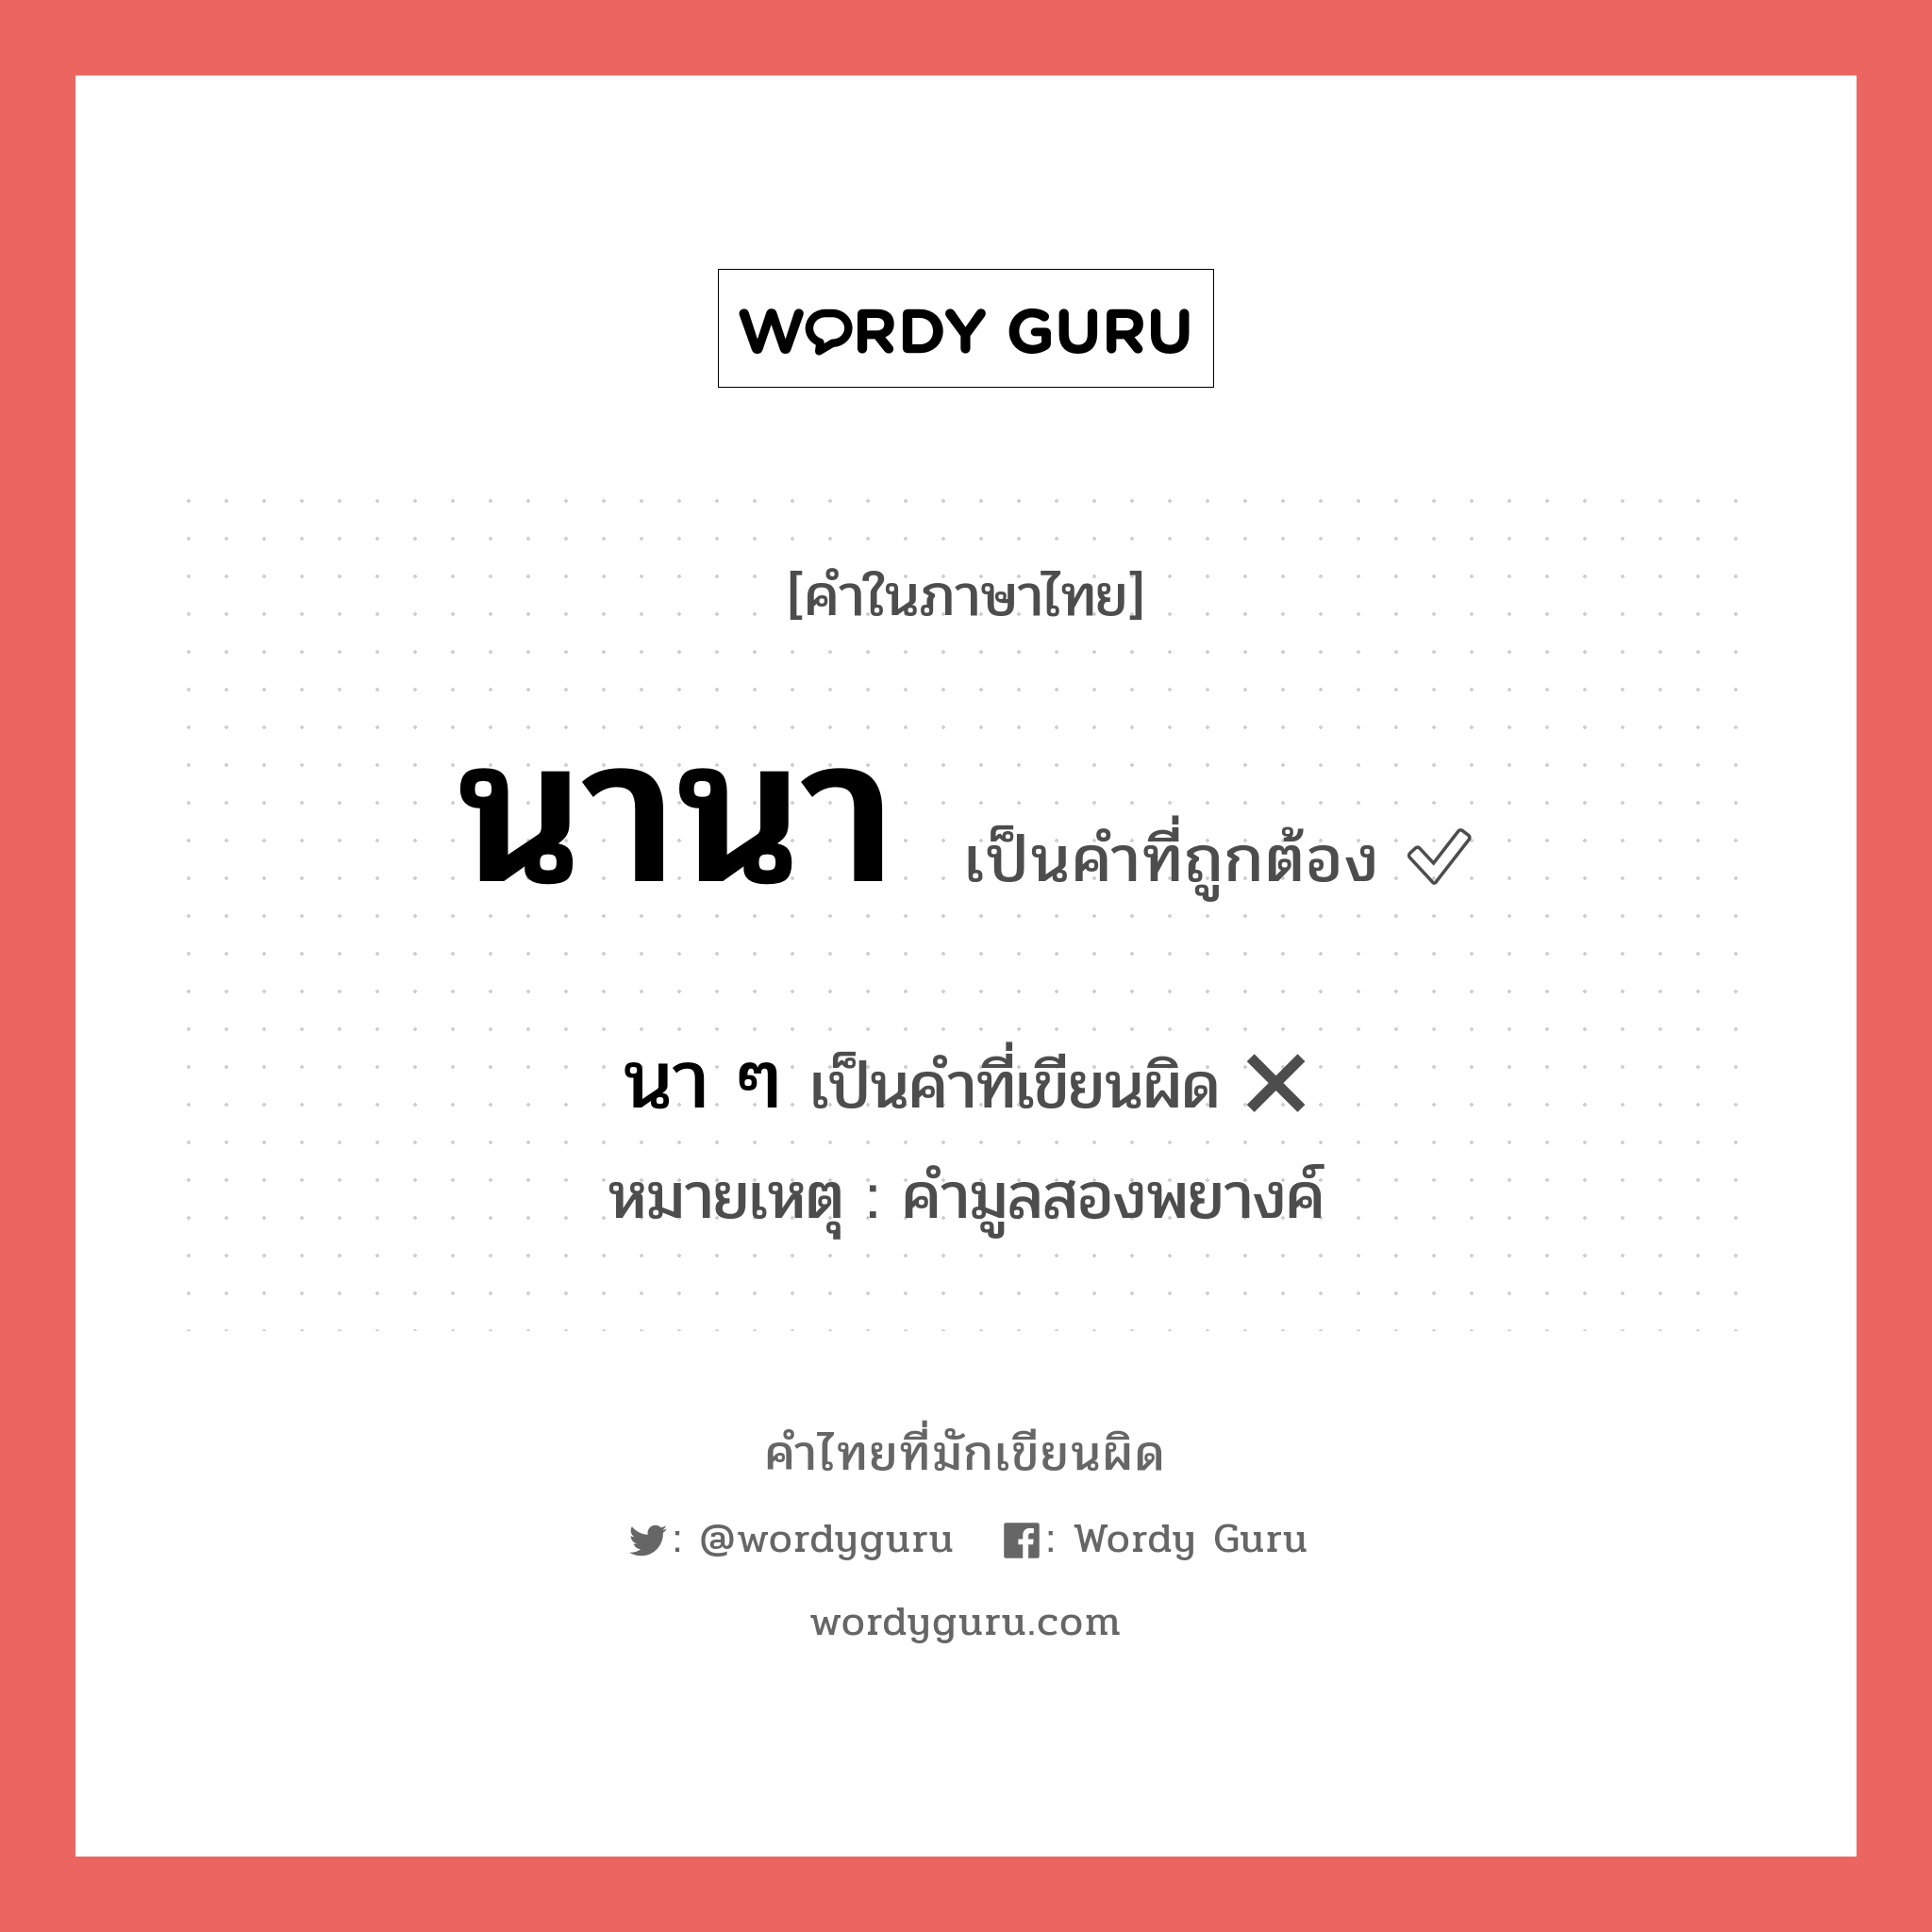 นานา หรือ นา ๆ คำไหนเขียนถูก?, คำในภาษาไทยที่มักเขียนผิด นานา คำที่ผิด ❌ นา ๆ หมายเหตุ คำมูลสองพยางค์